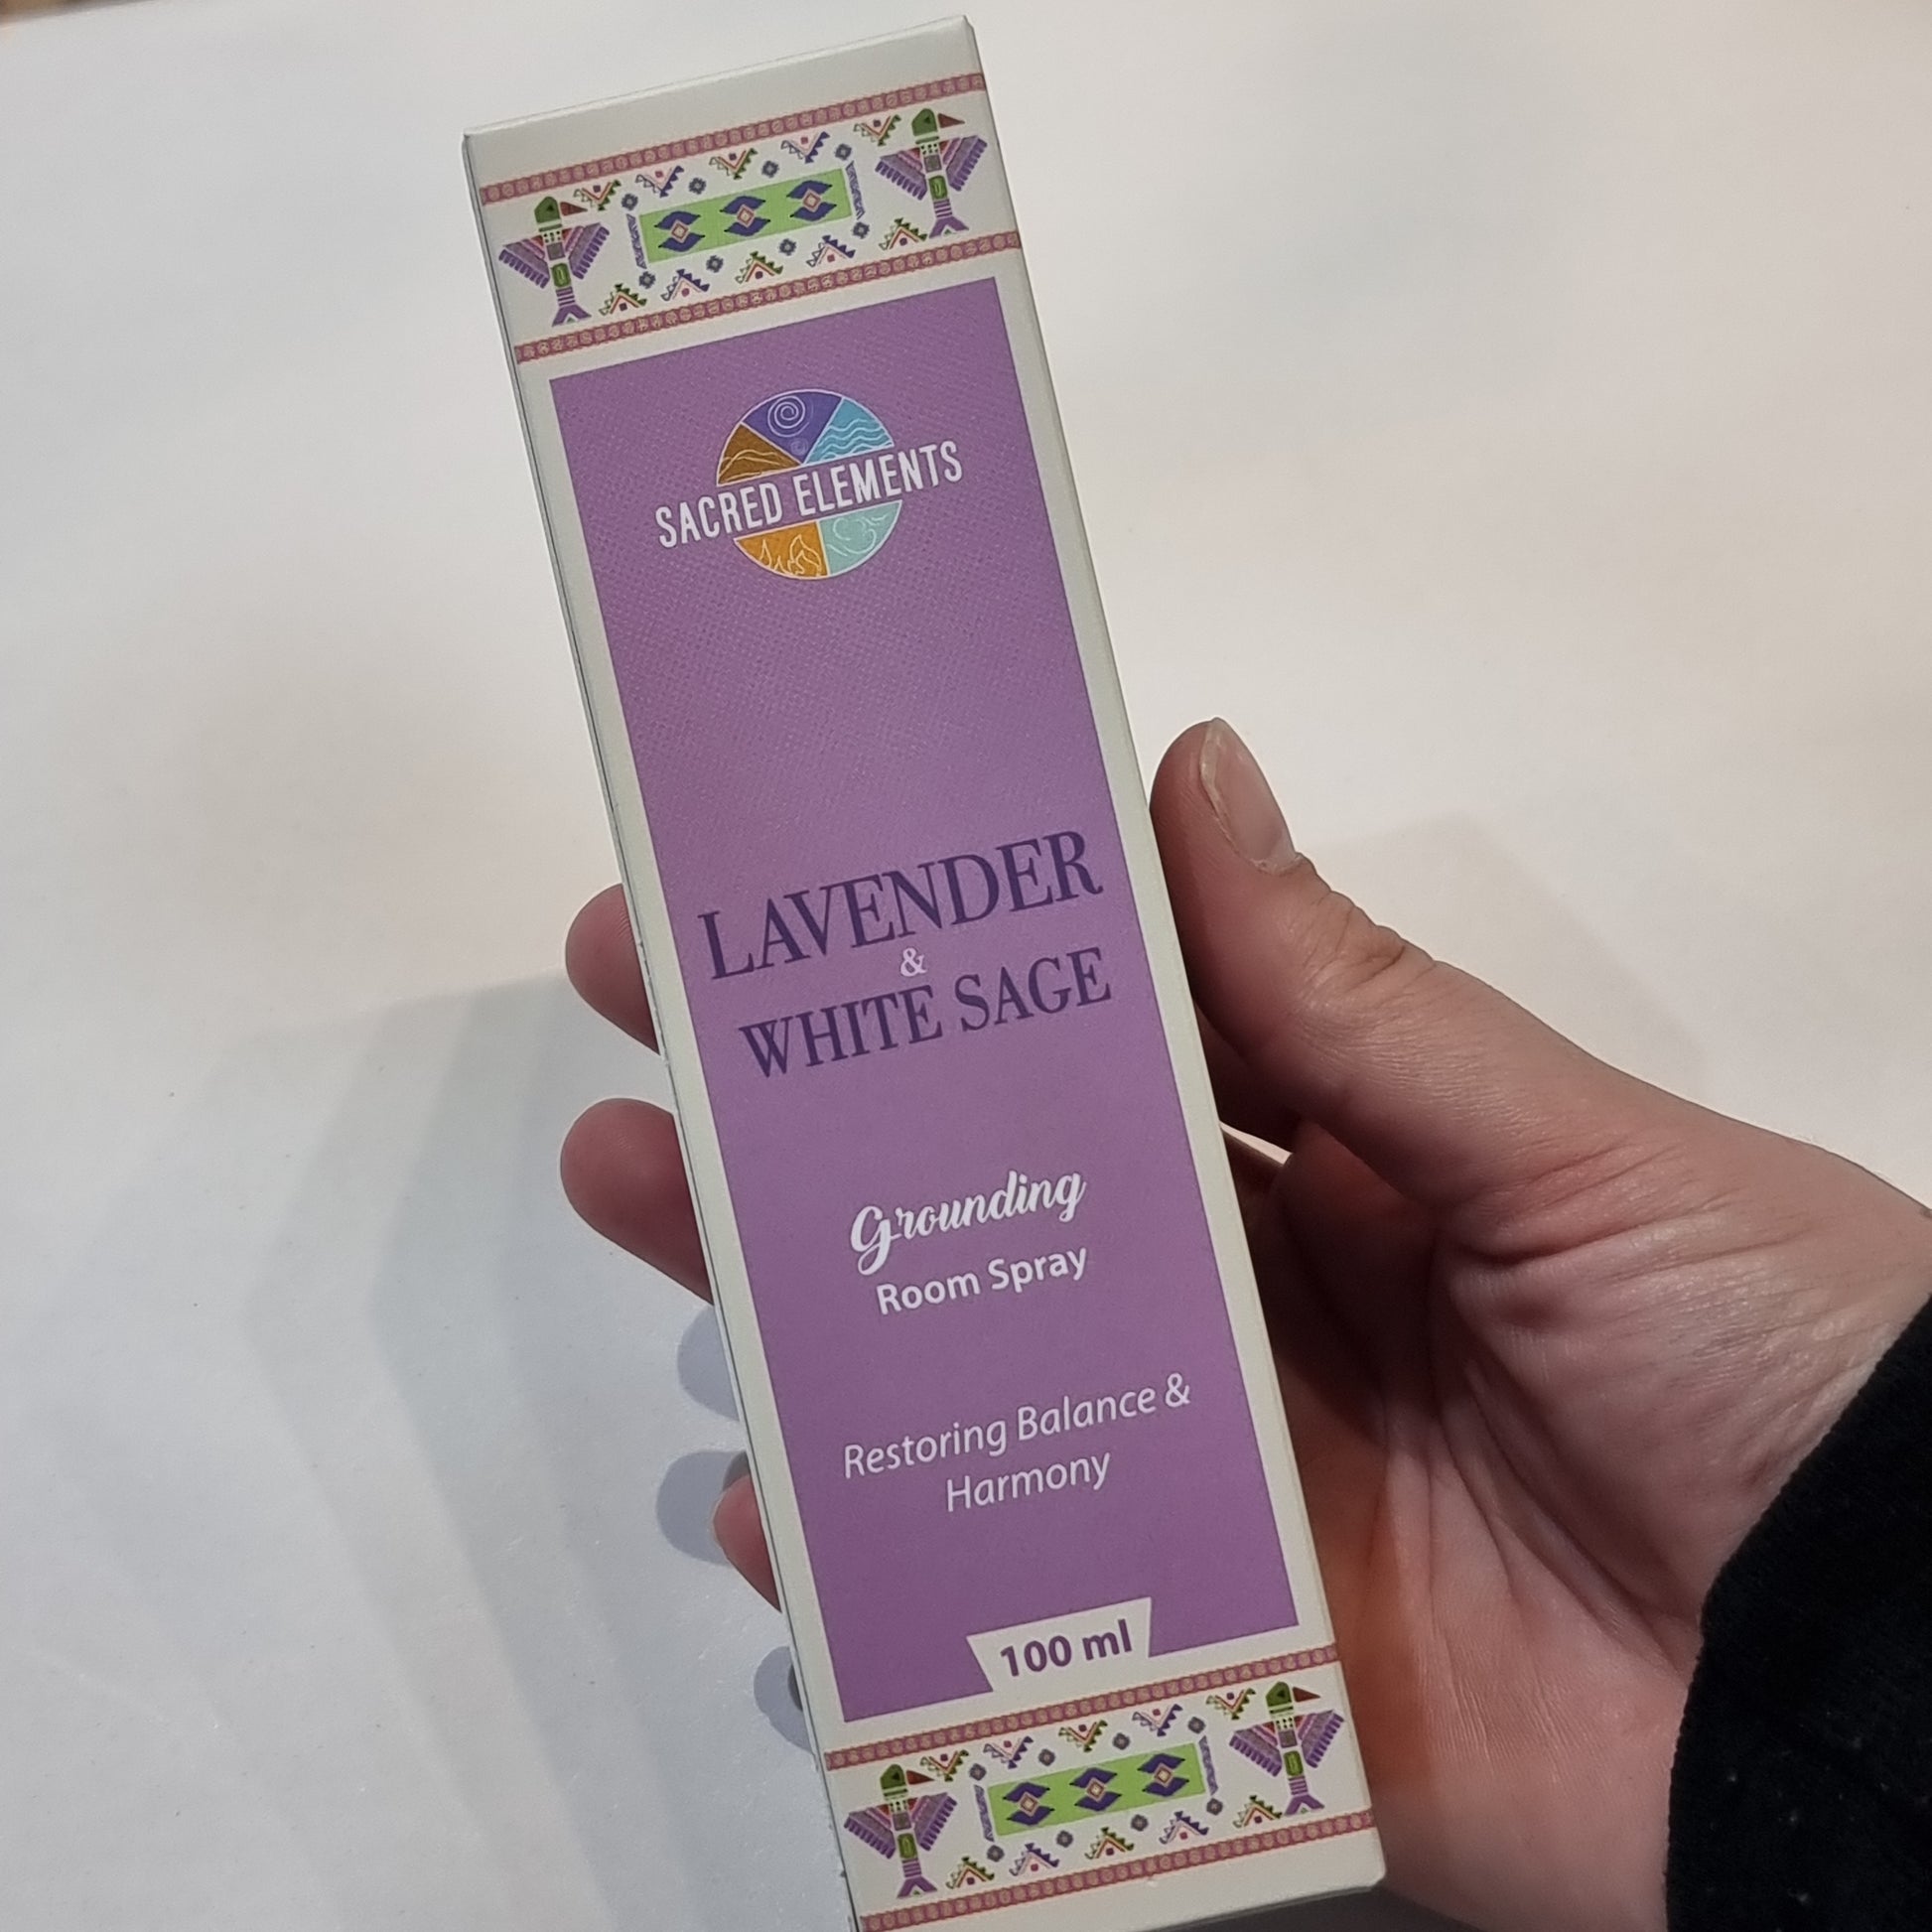 Sacred elements room spray - white sage & lavender - Rivendell Shop